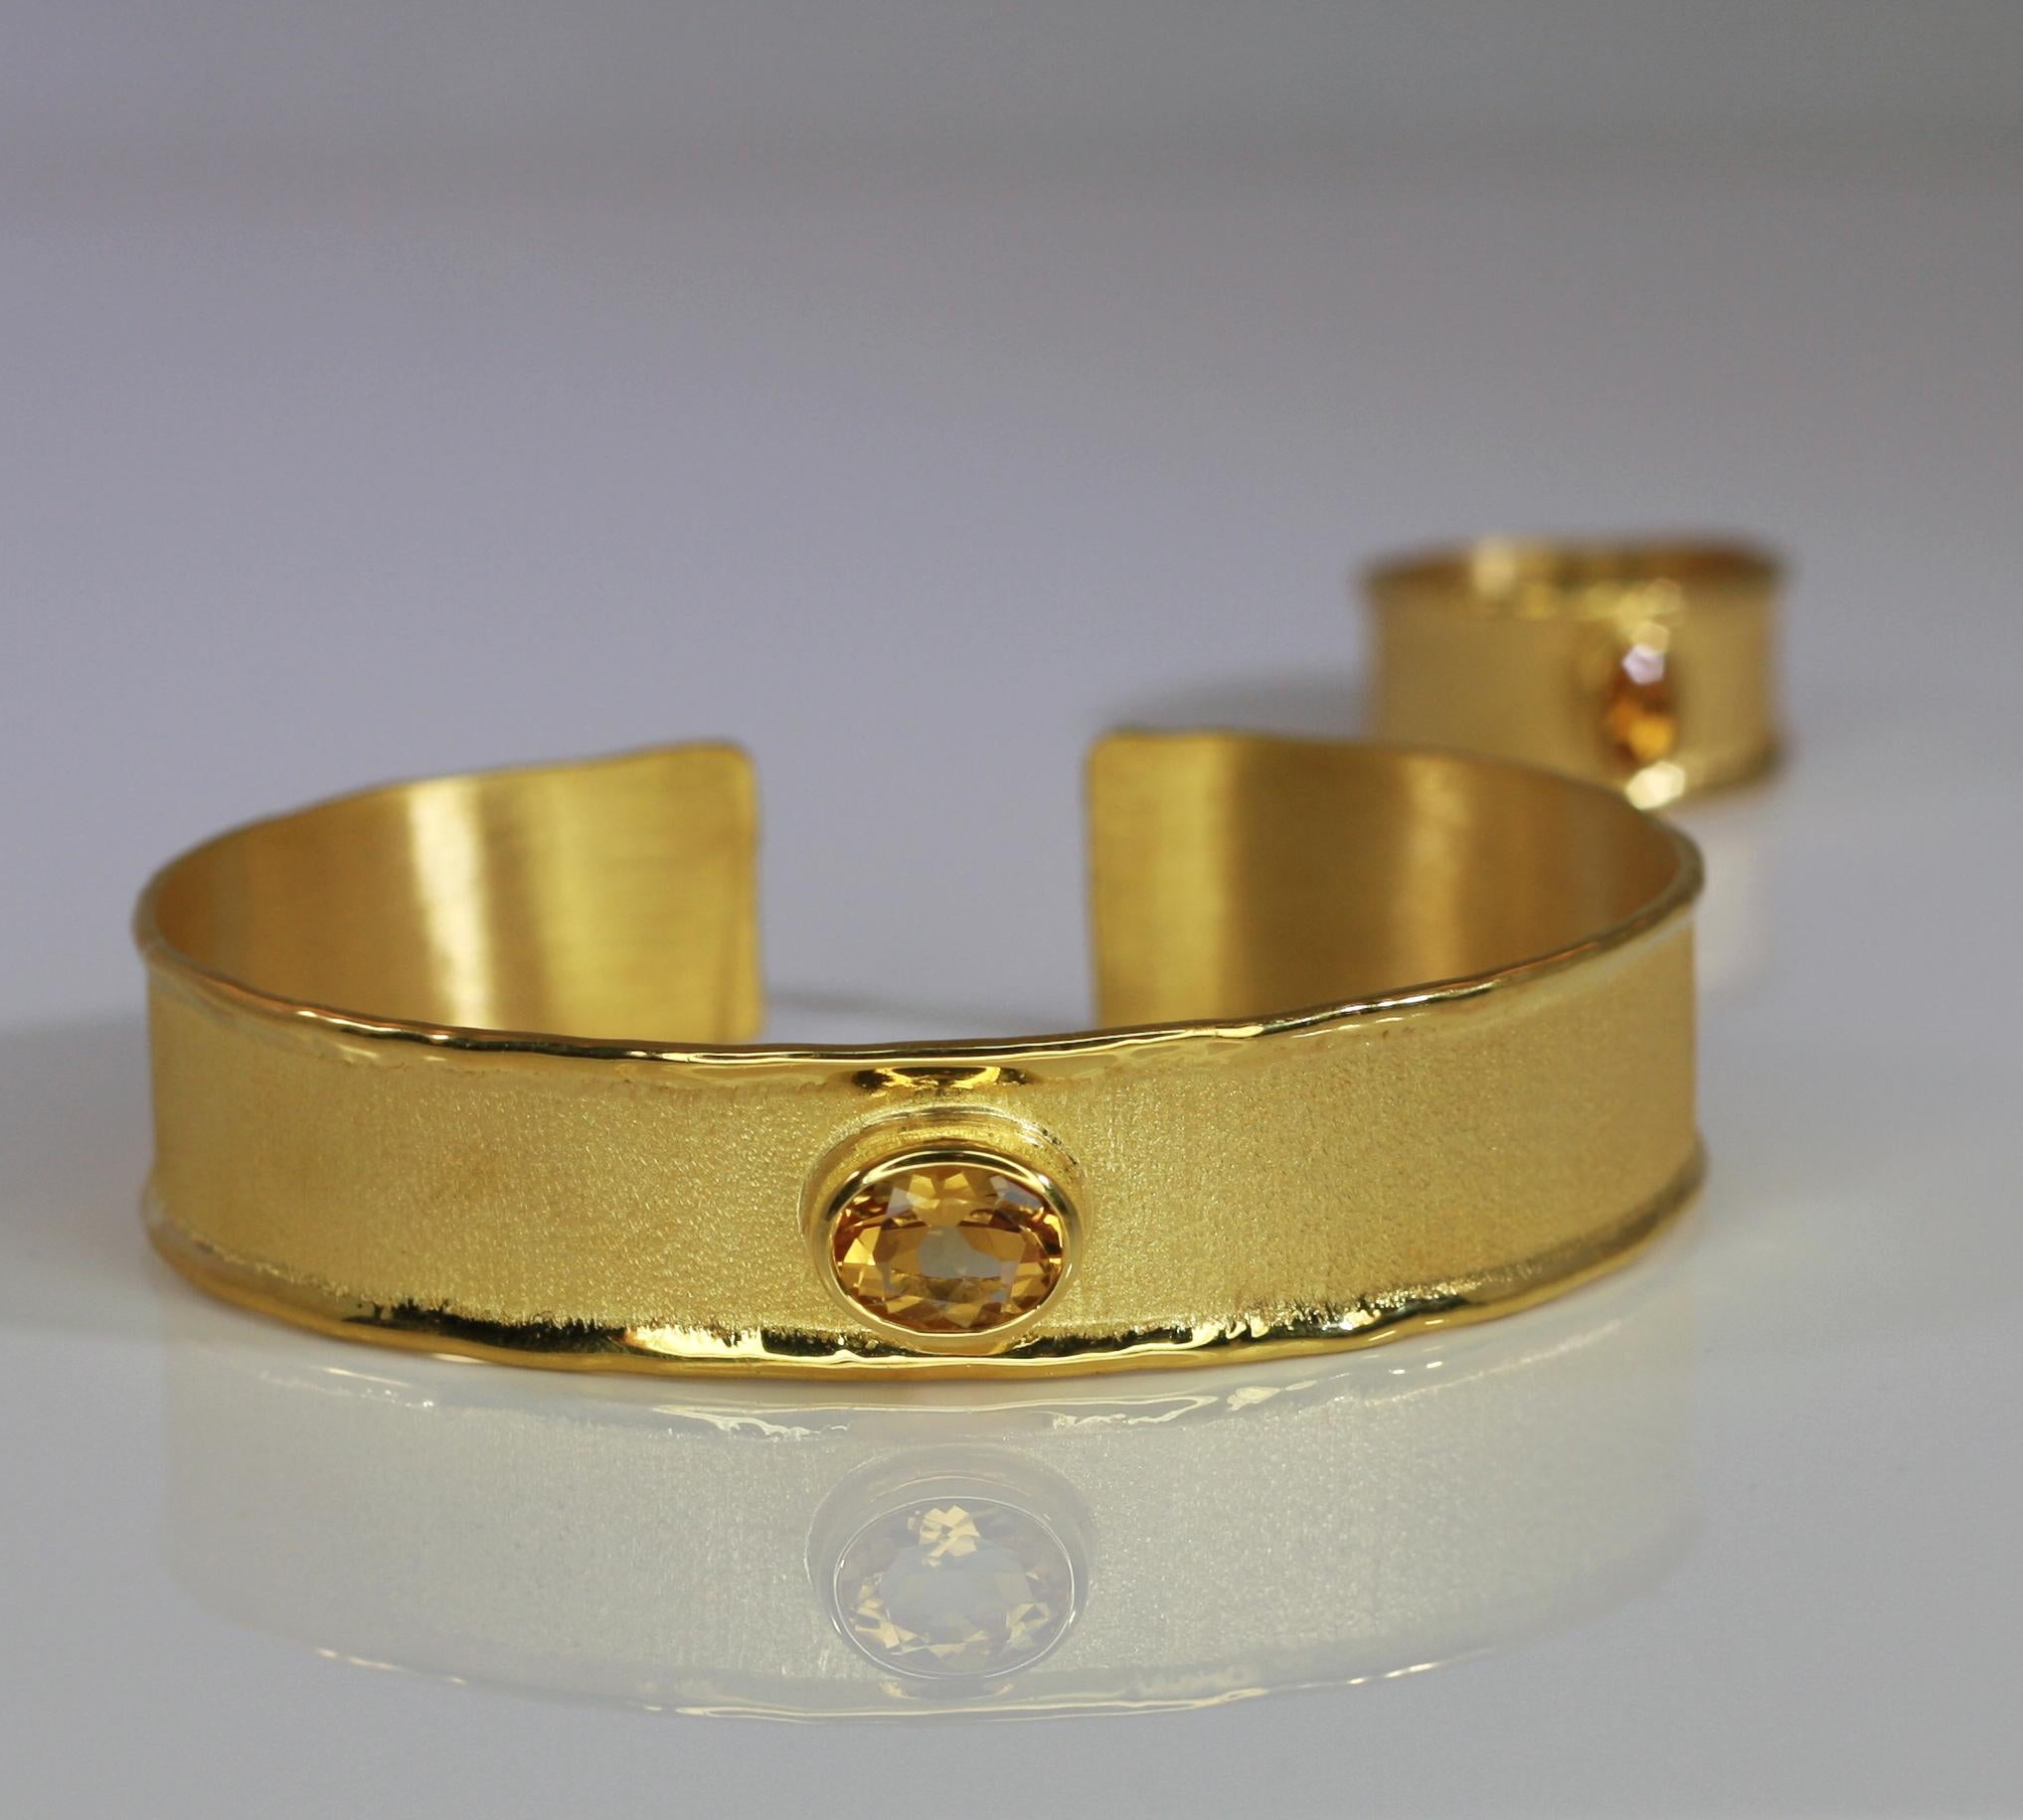 Ce bracelet de Yianni Creations est fabriqué à la main en Grèce en or 18 carats et serti de 1,75 carat de citrine. L'aspect unique est créé en utilisant des techniques artisanales anciennes - texture brossée et bords liquides inspirés de la nature.